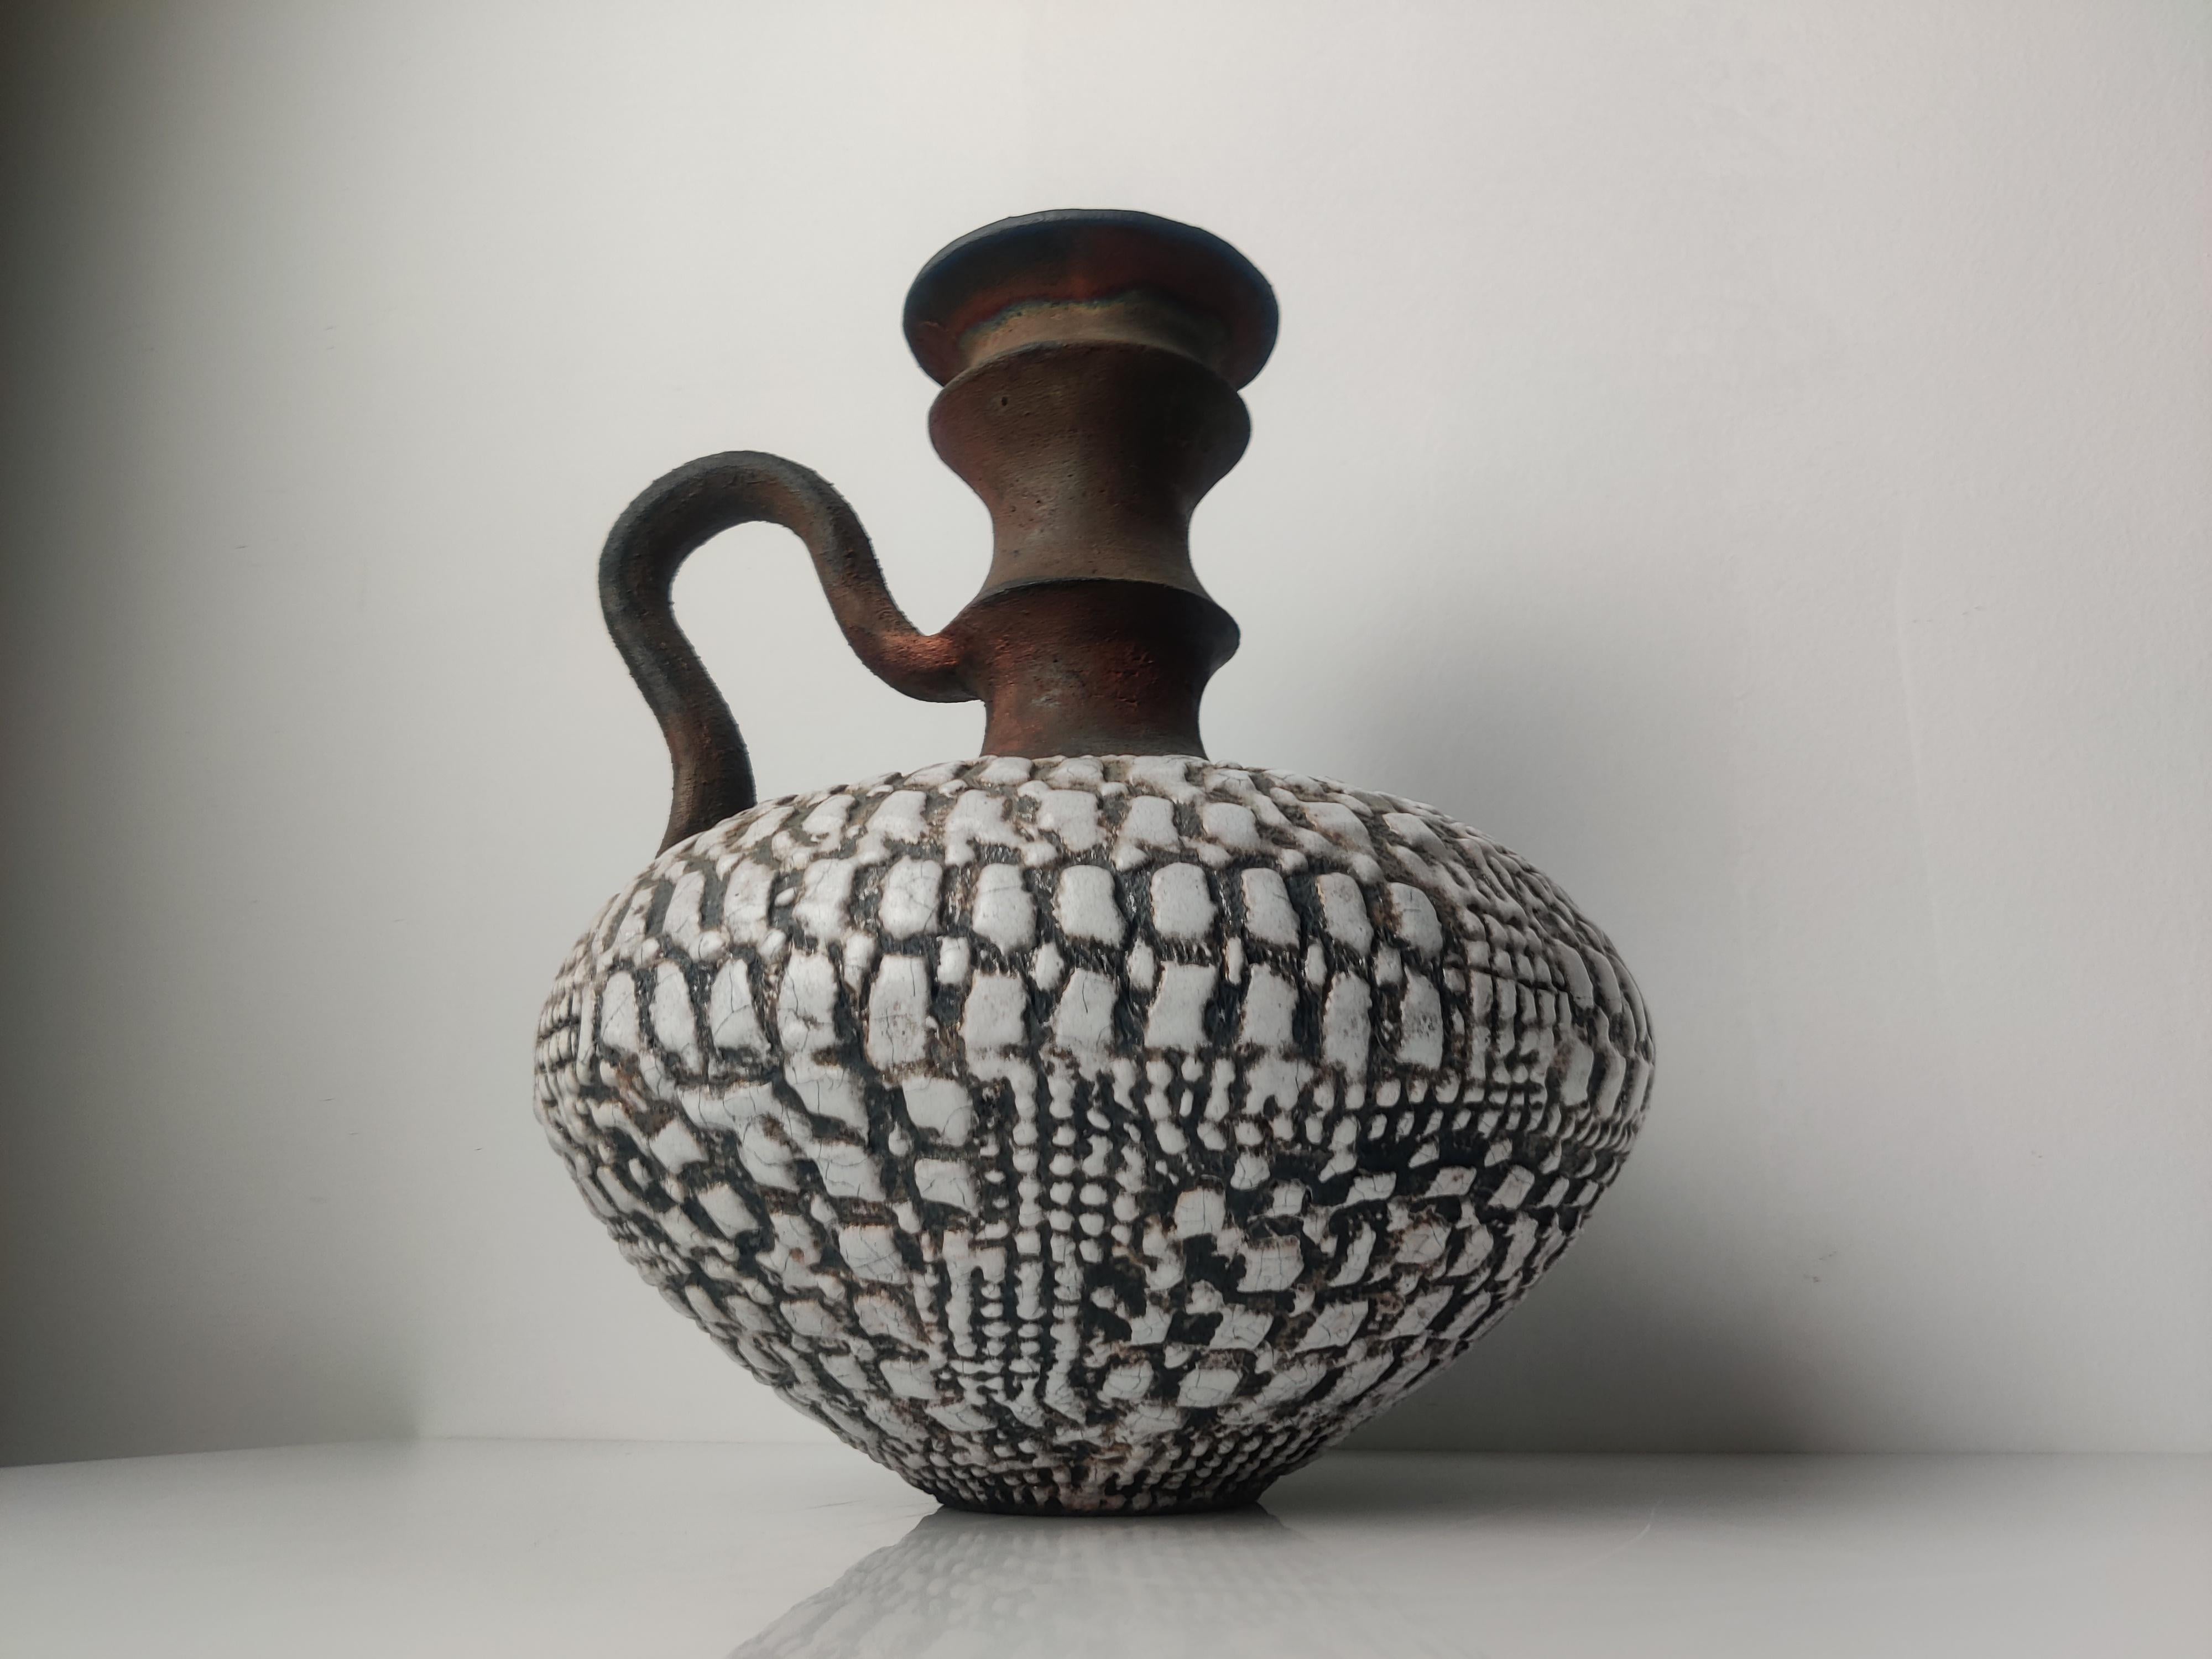 Fantastisches Keramikstück, signiert von dem spanischen Töpfer aus Salamanca, Juan Paco.